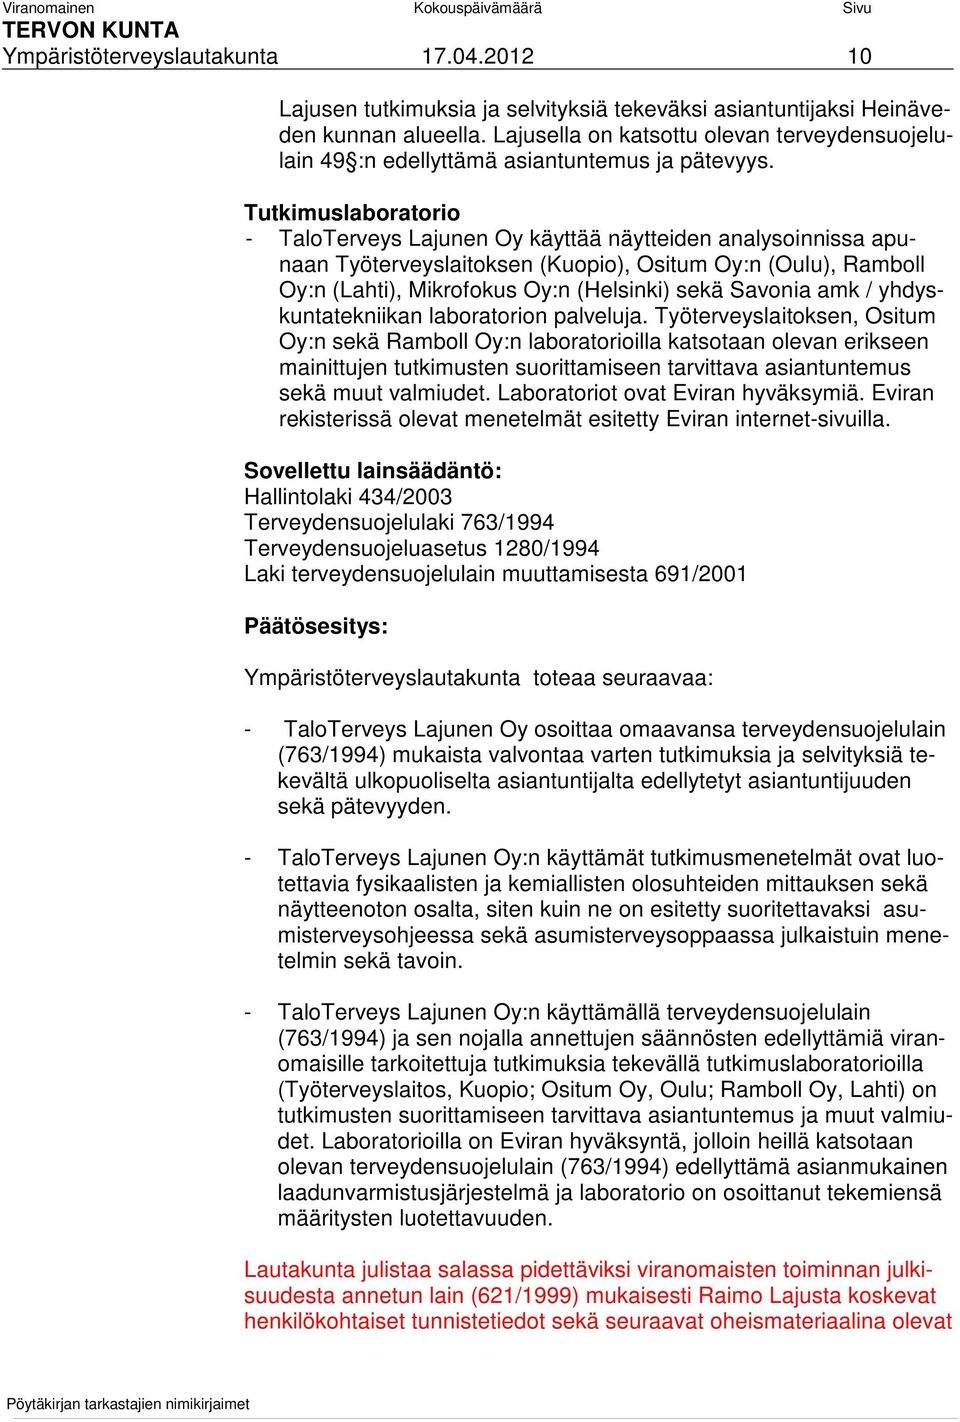 Tutkimuslaboratorio - TaloTerveys Lajunen Oy käyttää näytteiden analysoinnissa apunaan Työterveyslaitoksen (Kuopio), Ositum Oy:n (Oulu), Ramboll Oy:n (Lahti), Mikrofokus Oy:n (Helsinki) sekä Savonia